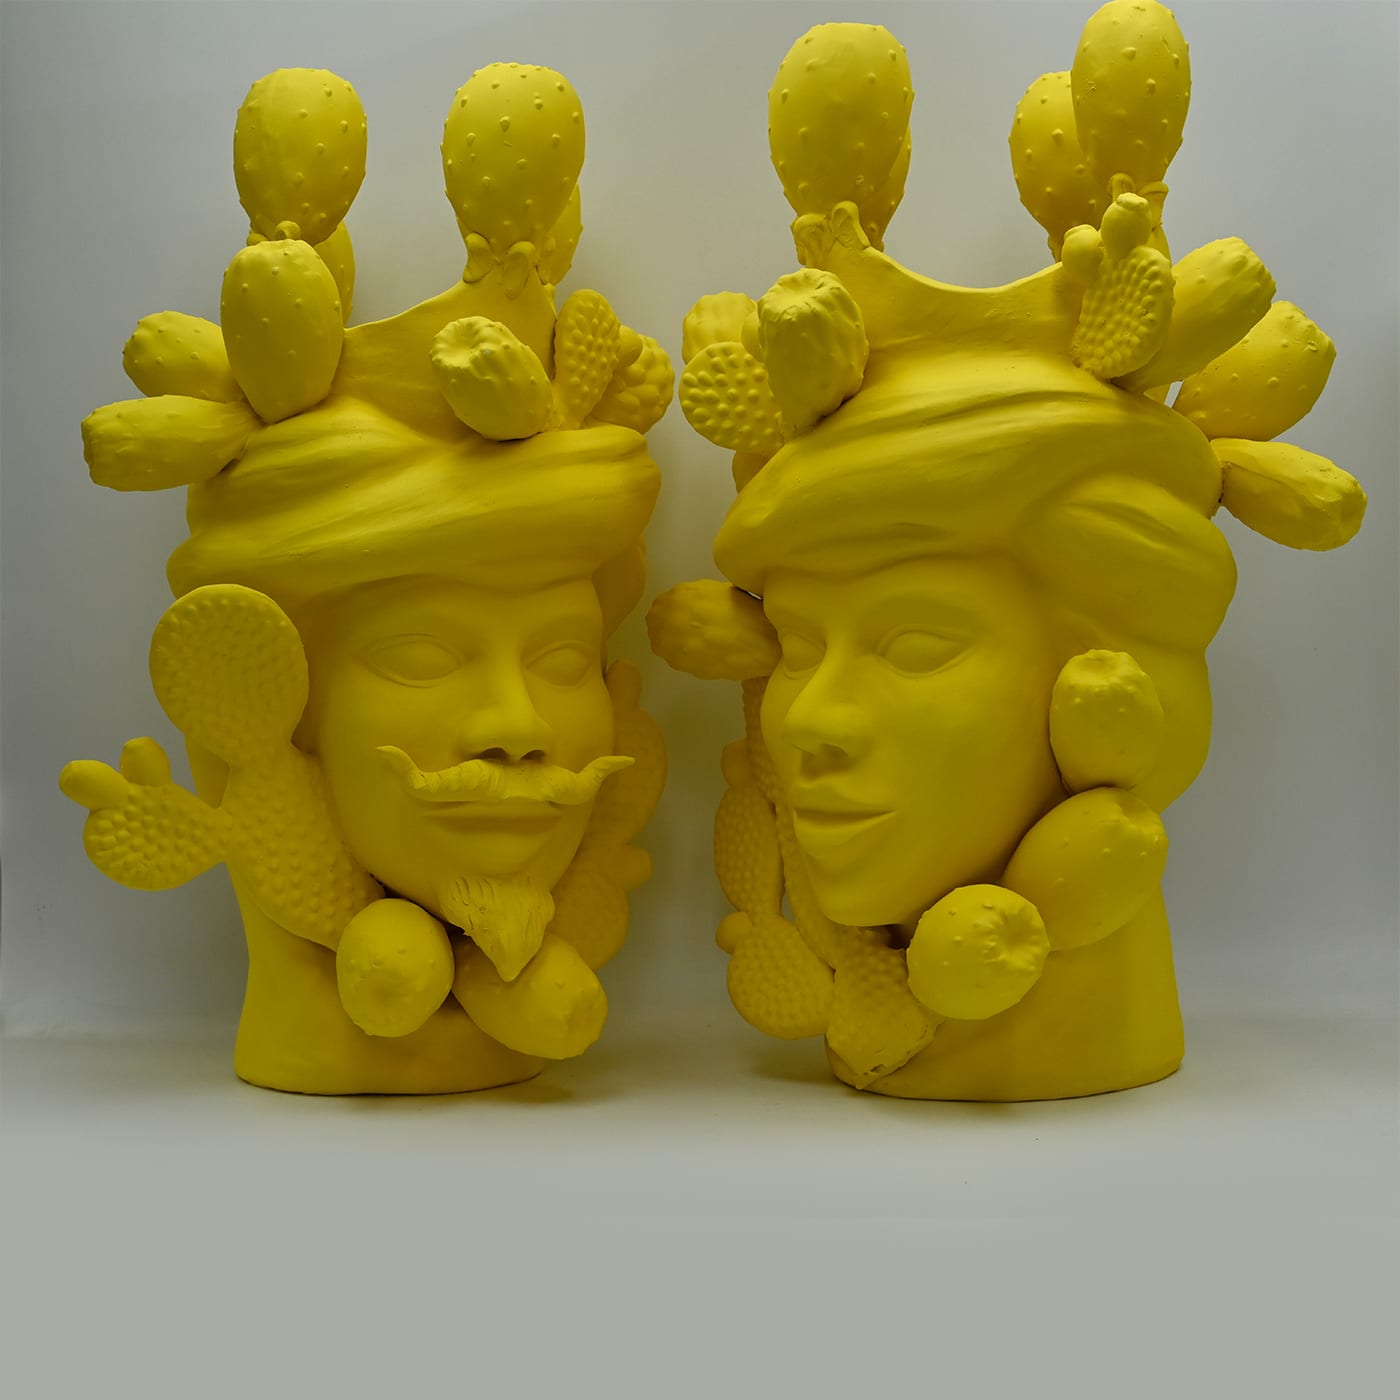 Moor's Head Yellow Unique Sculpture